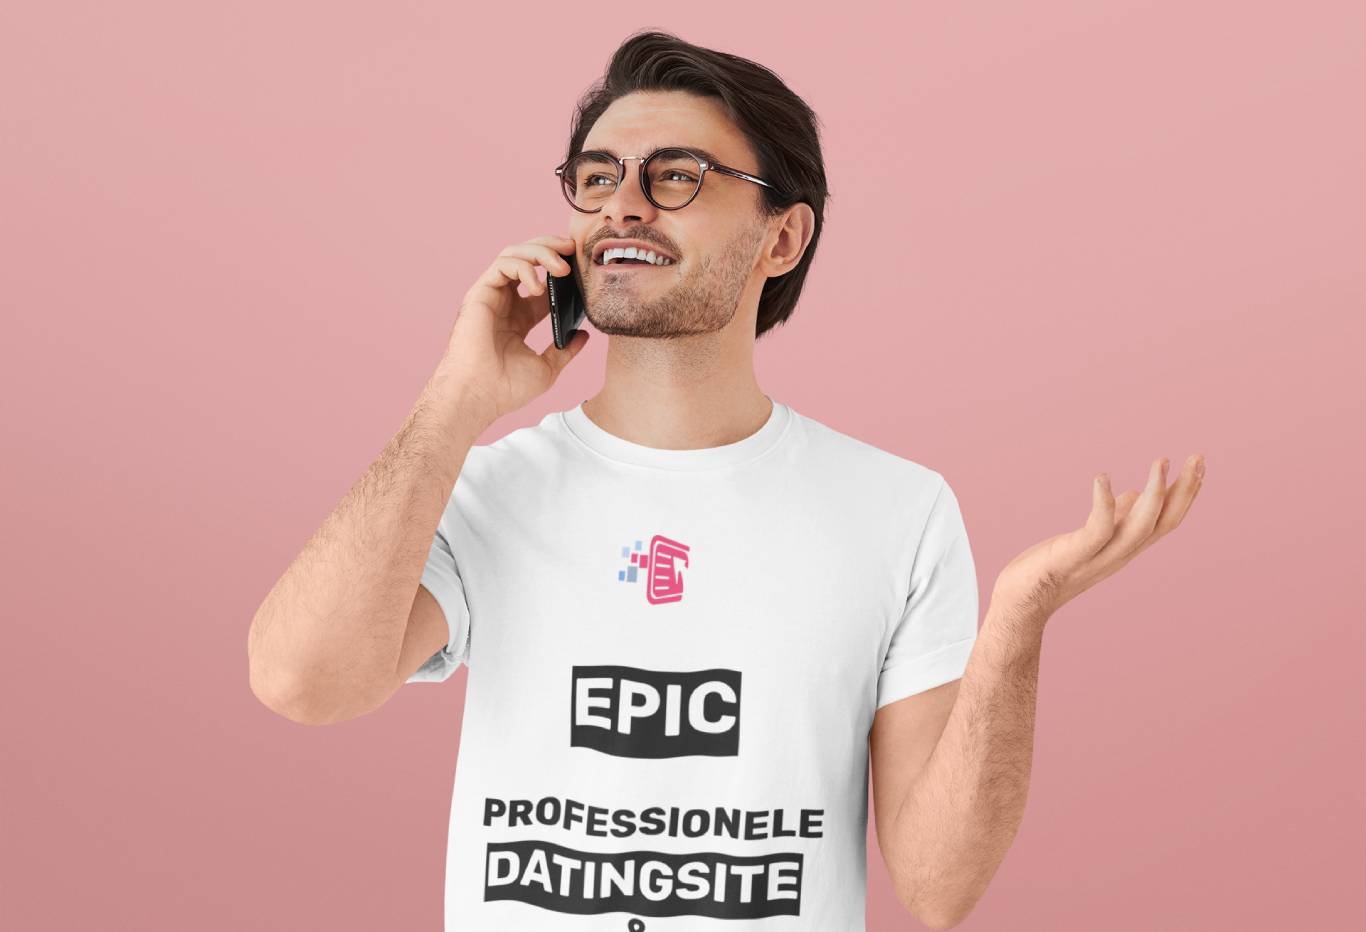 Een afbeelding van een man die aan het bellen is terwijl hij een shirt draagt met de tekst 'professionele dating site maker', wat duidt op zijn professionele ervaring in het maken van dating sites.